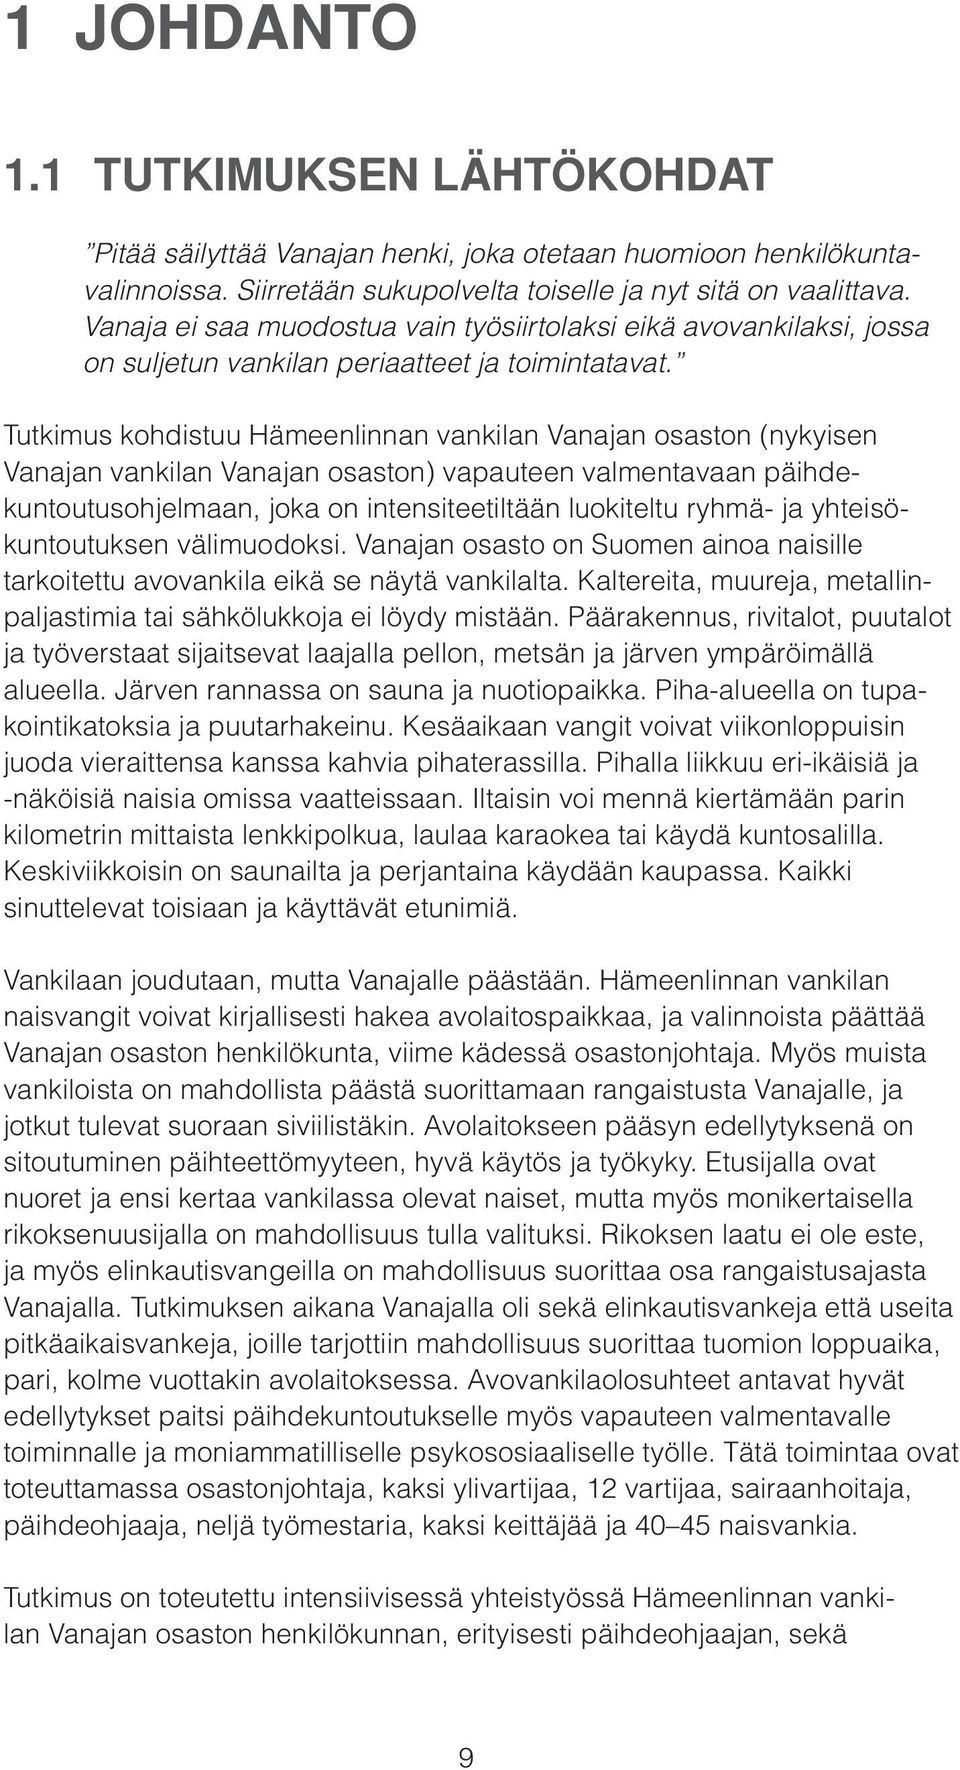 Tutkimus kohdistuu Hämeenlinnan vankilan Vanajan osaston (nykyisen Vanajan vankilan Vanajan osaston) vapauteen valmentavaan päihdekuntoutusohjelmaan, joka on intensiteetiltään luokiteltu ryhmä- ja